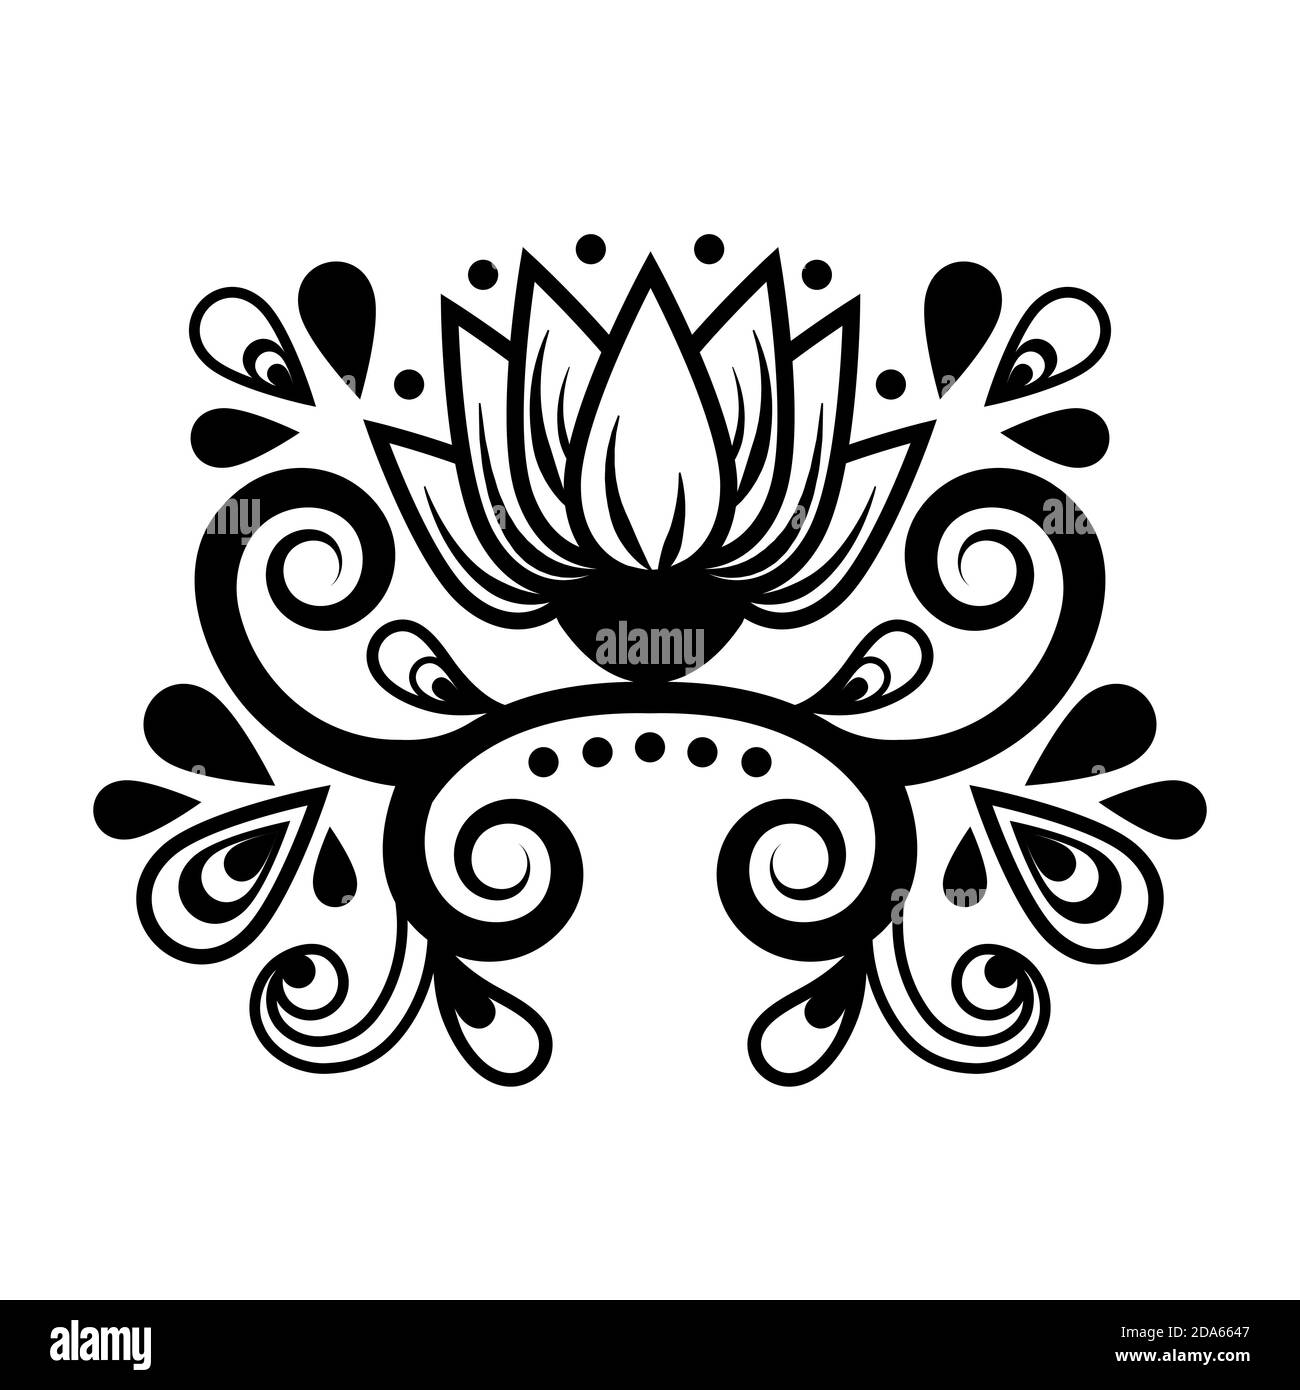 Décoration florale abstraite, motif ethnique, dessin noir et blanc avec boucles, spirales, fleurs, éléments décoratifs, imprimé, tatouage, coloriage iso Illustration de Vecteur